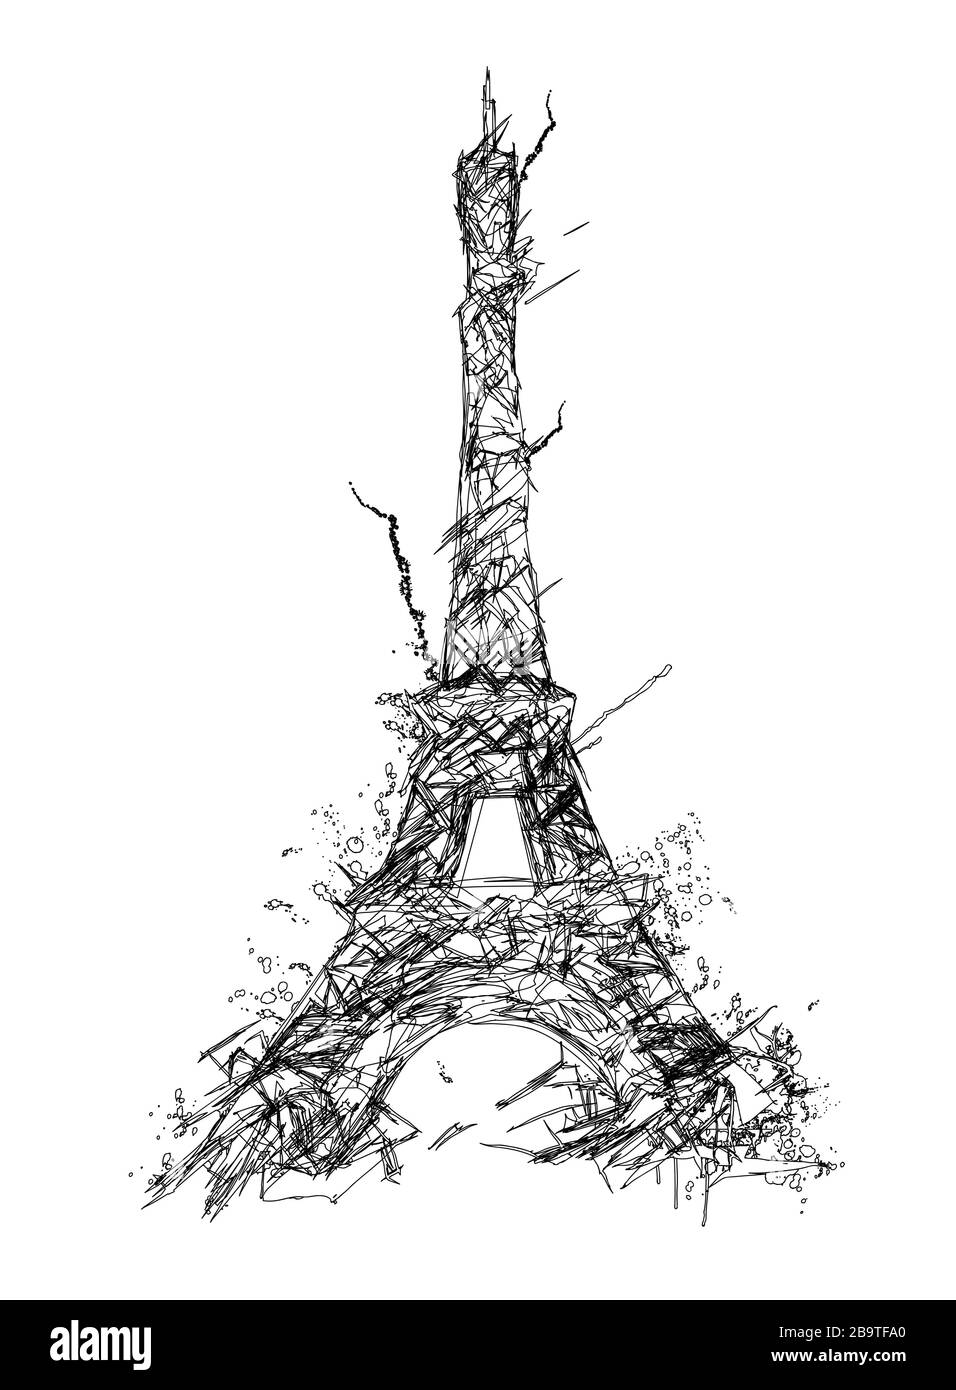 Darstellung des eiffelturms in Paris - Vektorgrafiken (ideal für den Druck auf Stoff oder Papier, Plakat oder Tapete, Hausdekoration) Stock Vektor